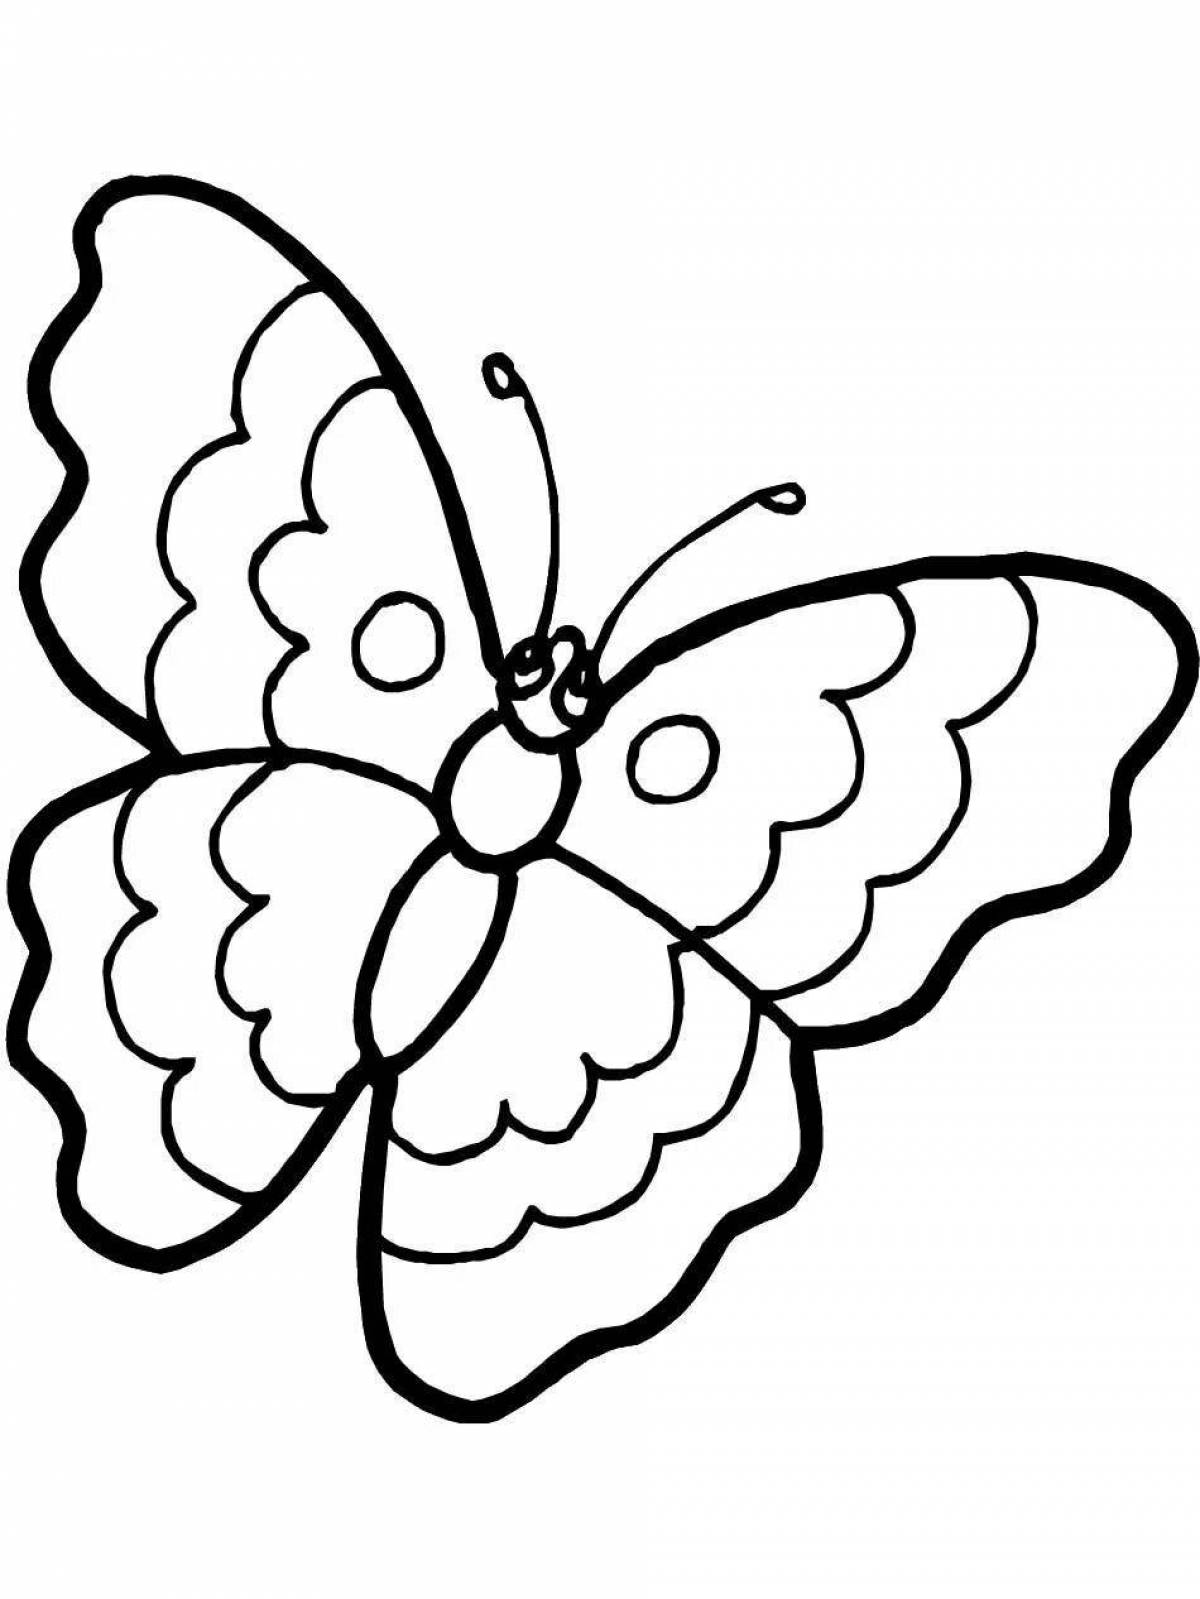 Раскраски для детей 4 5 бабочки. Контур бабочки для раскрашивания для детей. Раскраска "бабочки". Бабочка раскраска для детей. Бабочка раскраска для малышей.